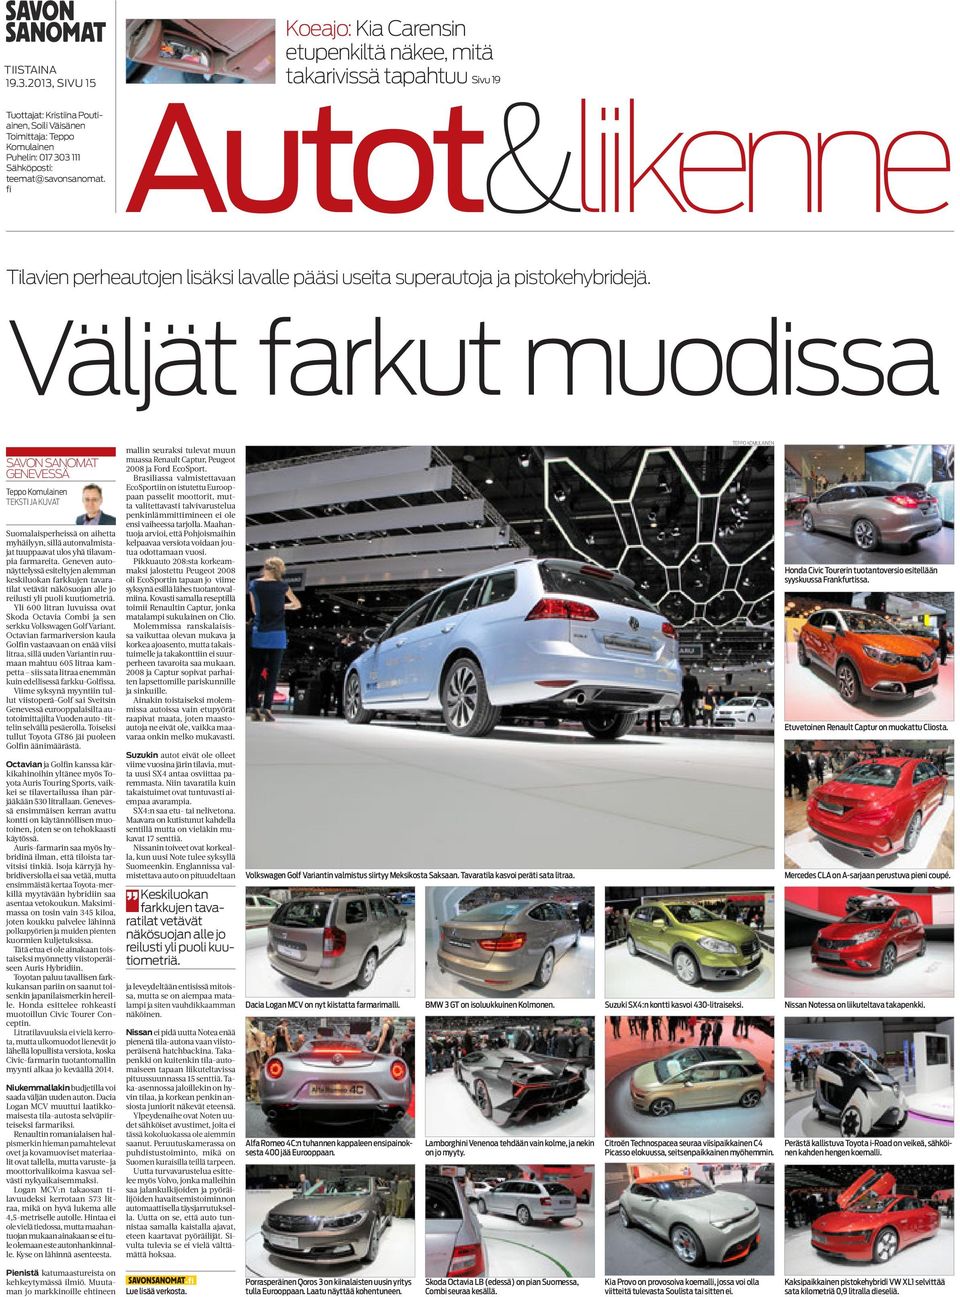 Väljät farkut muodissa Savon Sanomat Genevessä teksti ja kuvat Suomalaisperheissä on aihetta myhäilyyn, sillä autonvalmistajat tuuppaavat ulos yhä tilavampia farmareita.